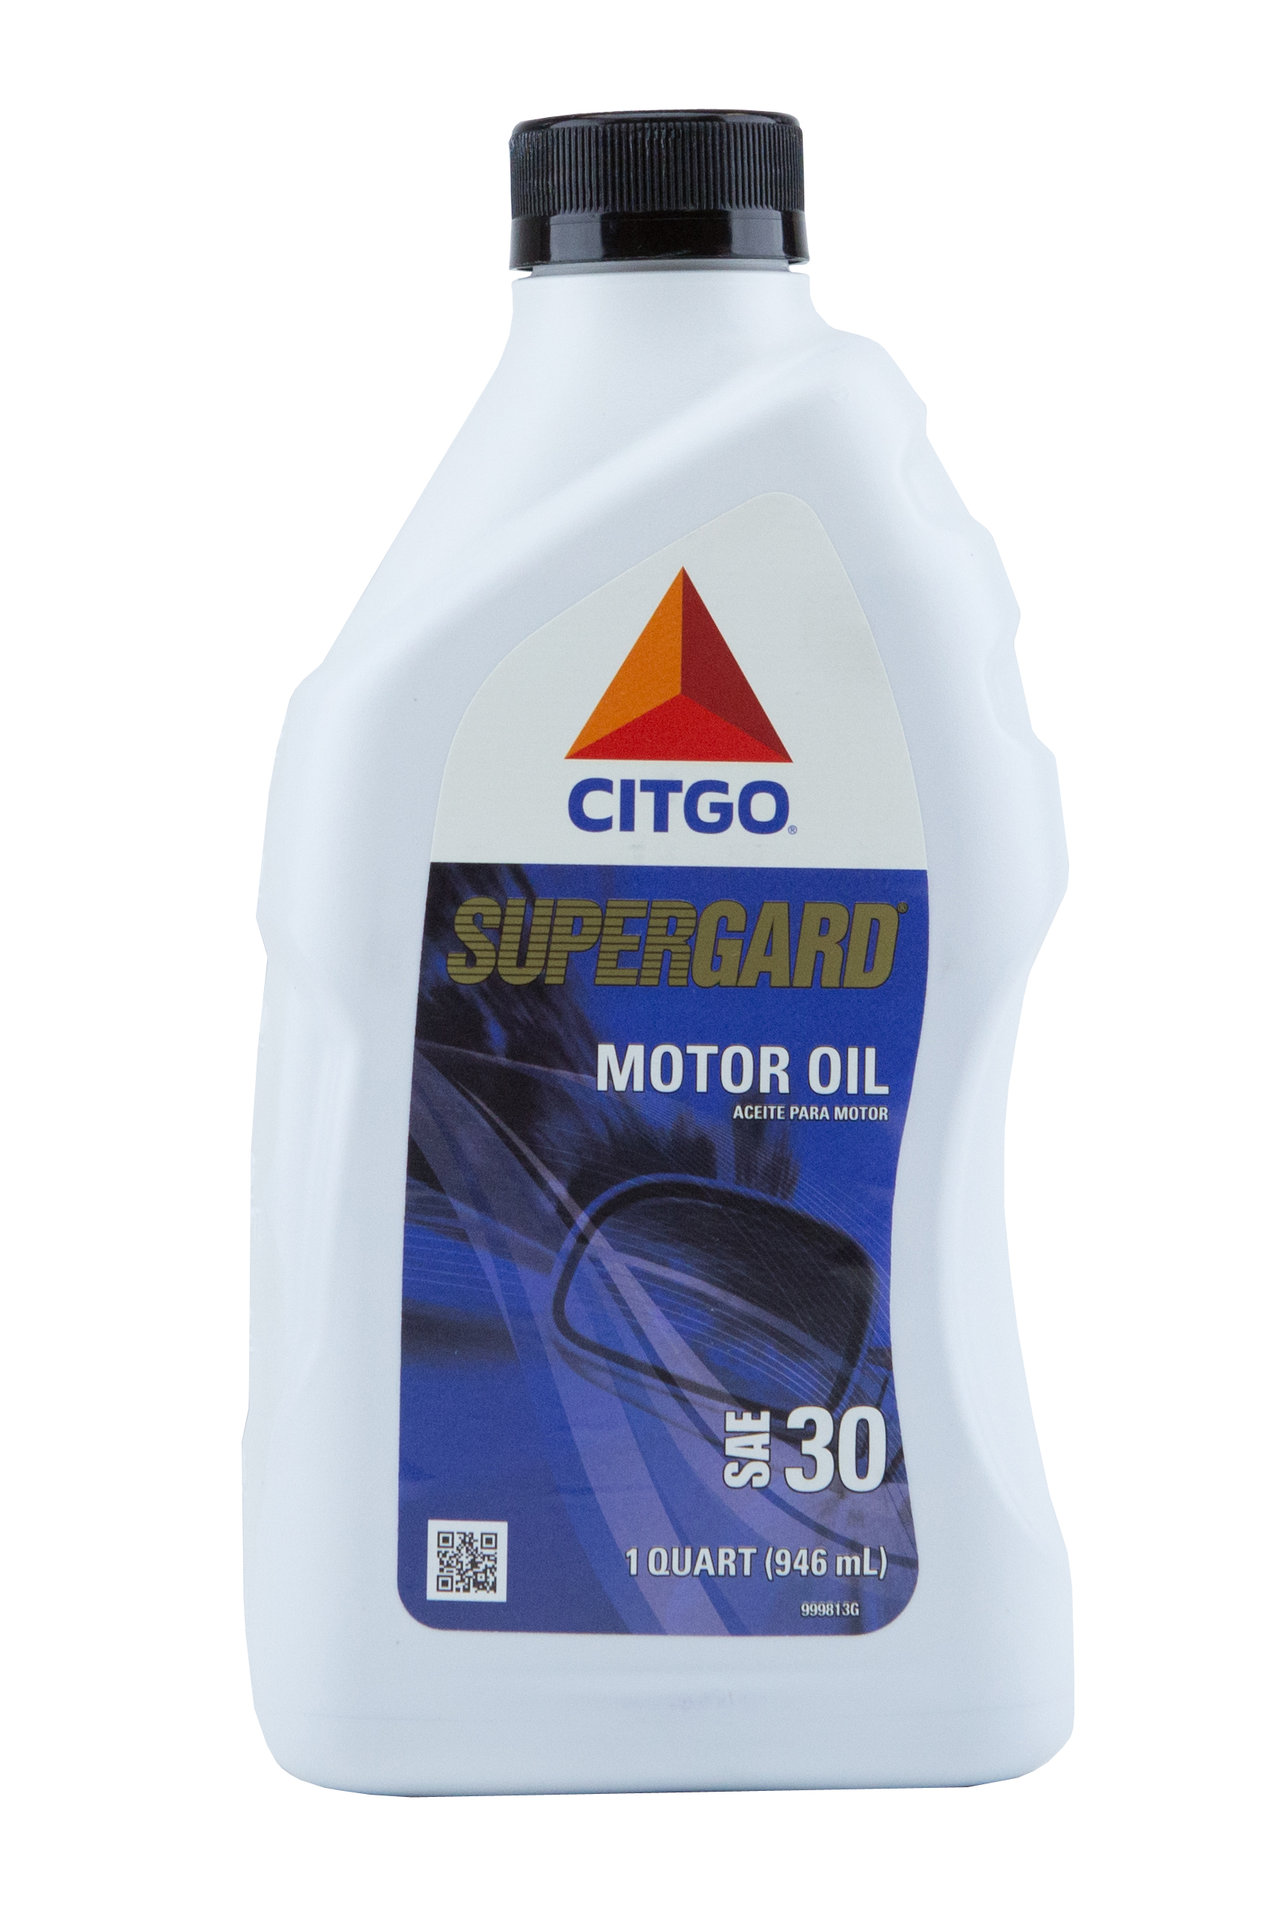 citgo-supergard-syntethic-motor-oil-10w30-pdv-do-brasil